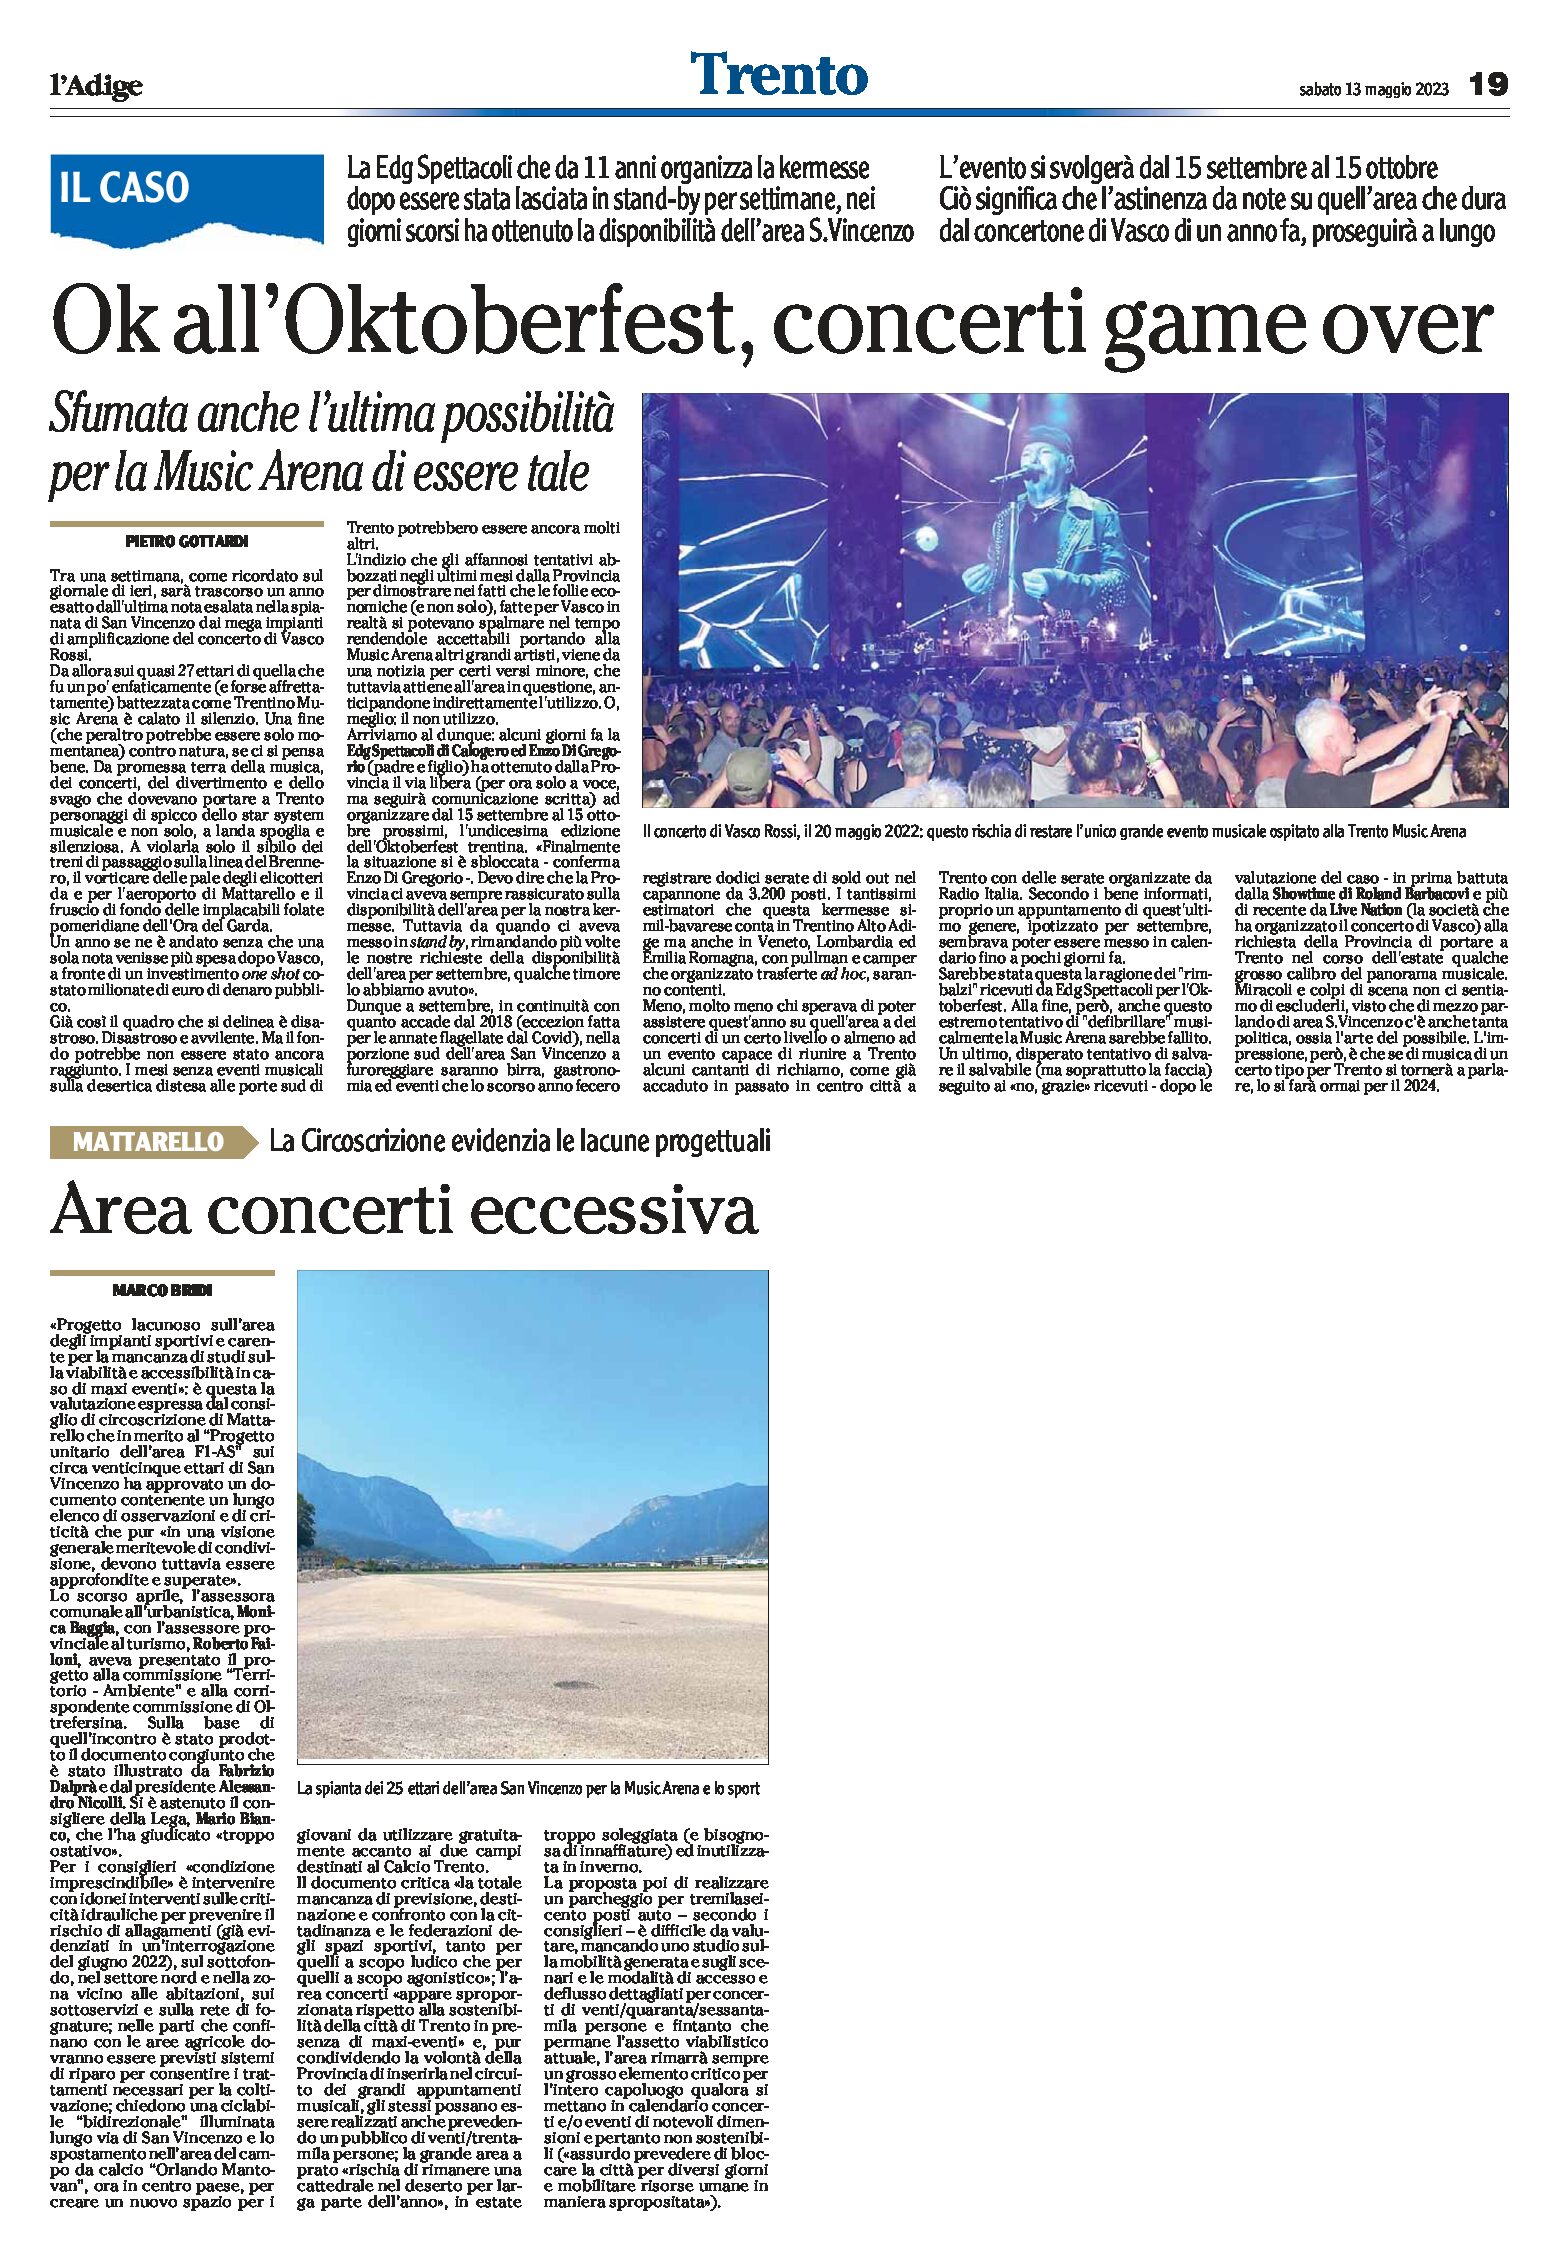 San Vincenzo: area concerti eccessiva